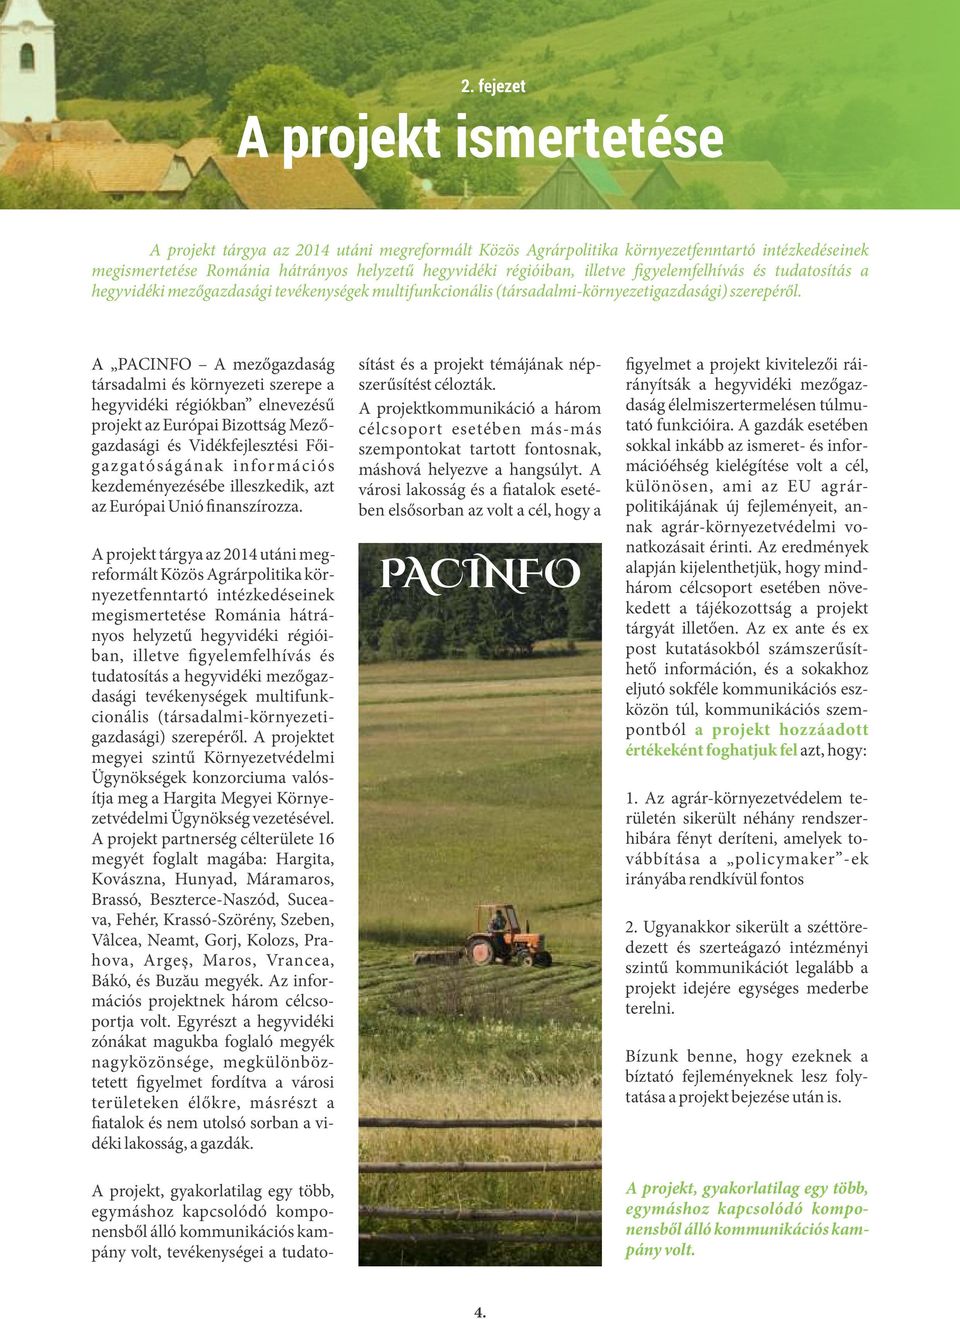 A PACINFO A mezőgazdaság társadalmi és környezeti szerepe a hegyvidéki régiókban elnevezésű projekt az Európai Bizottság Mezőgazdasági és Vidékfejlesztési Főigazgatóságának információs